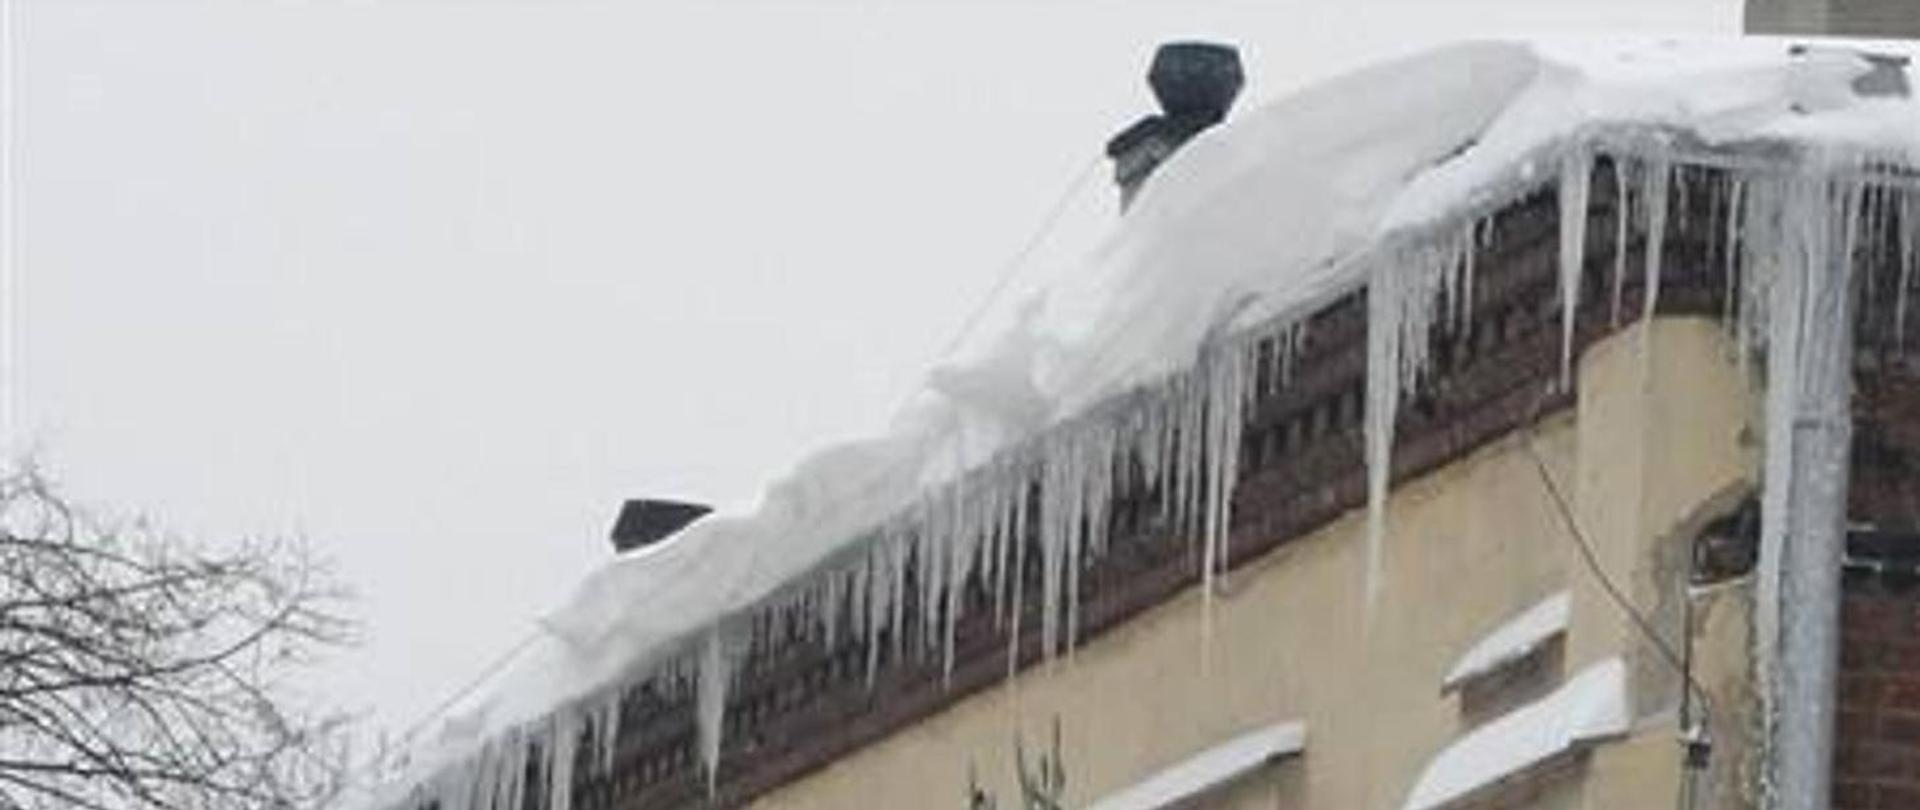 Usuwanie śniegu i nawisów lodowych z dachów